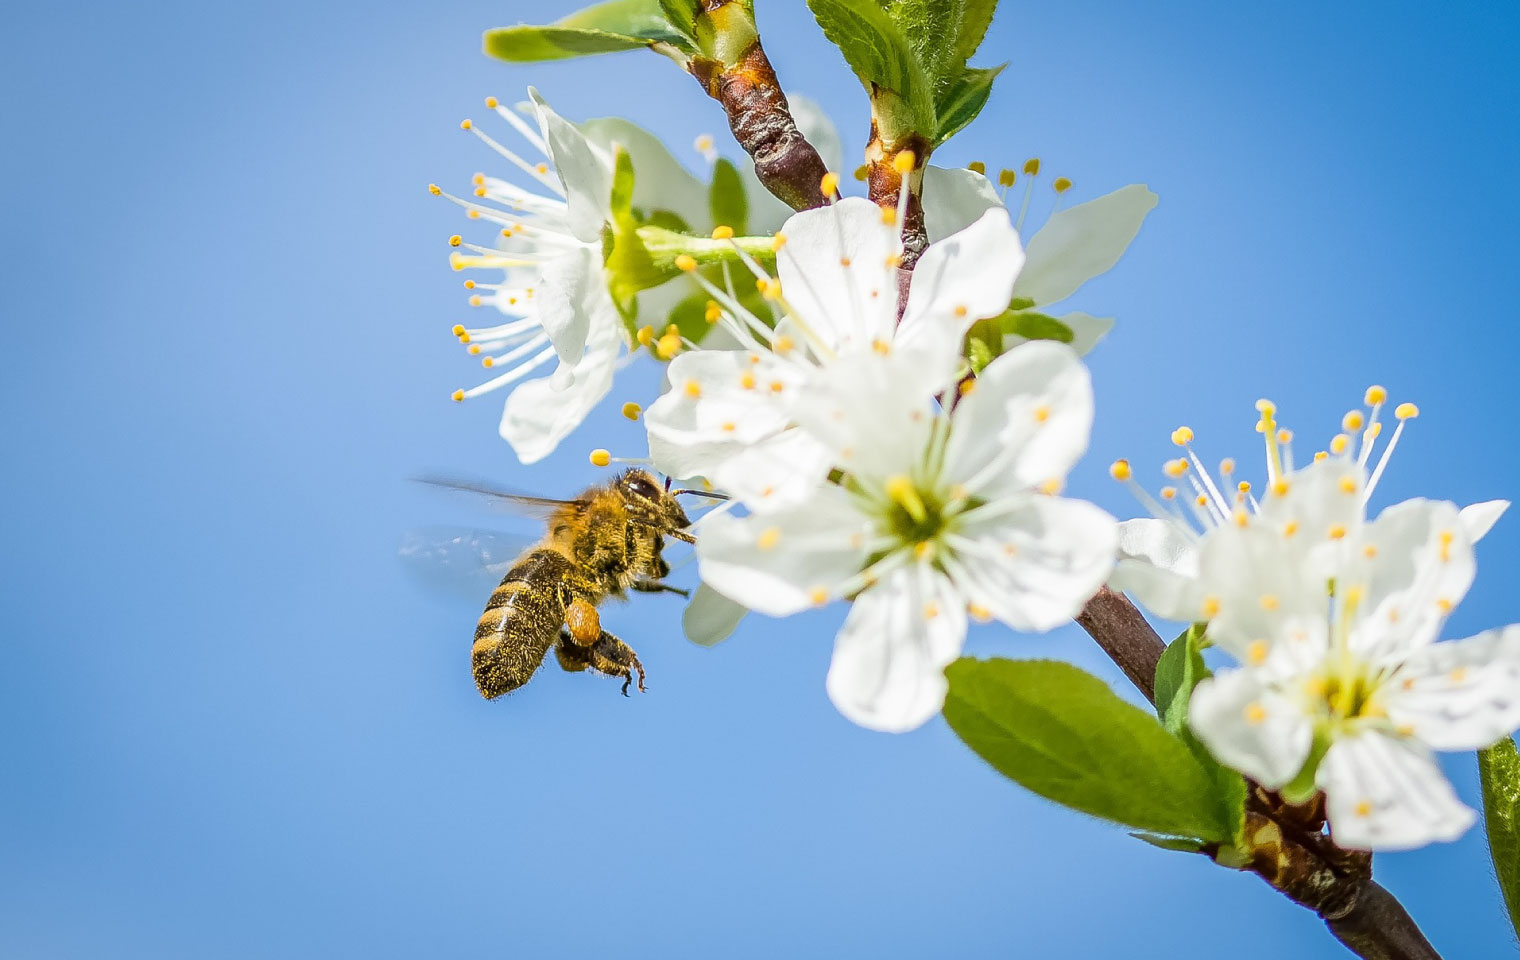 زنبور عسل در باغ 9- https://pixabay.com/photos/bee-cherry-blossom-spring-2237205/